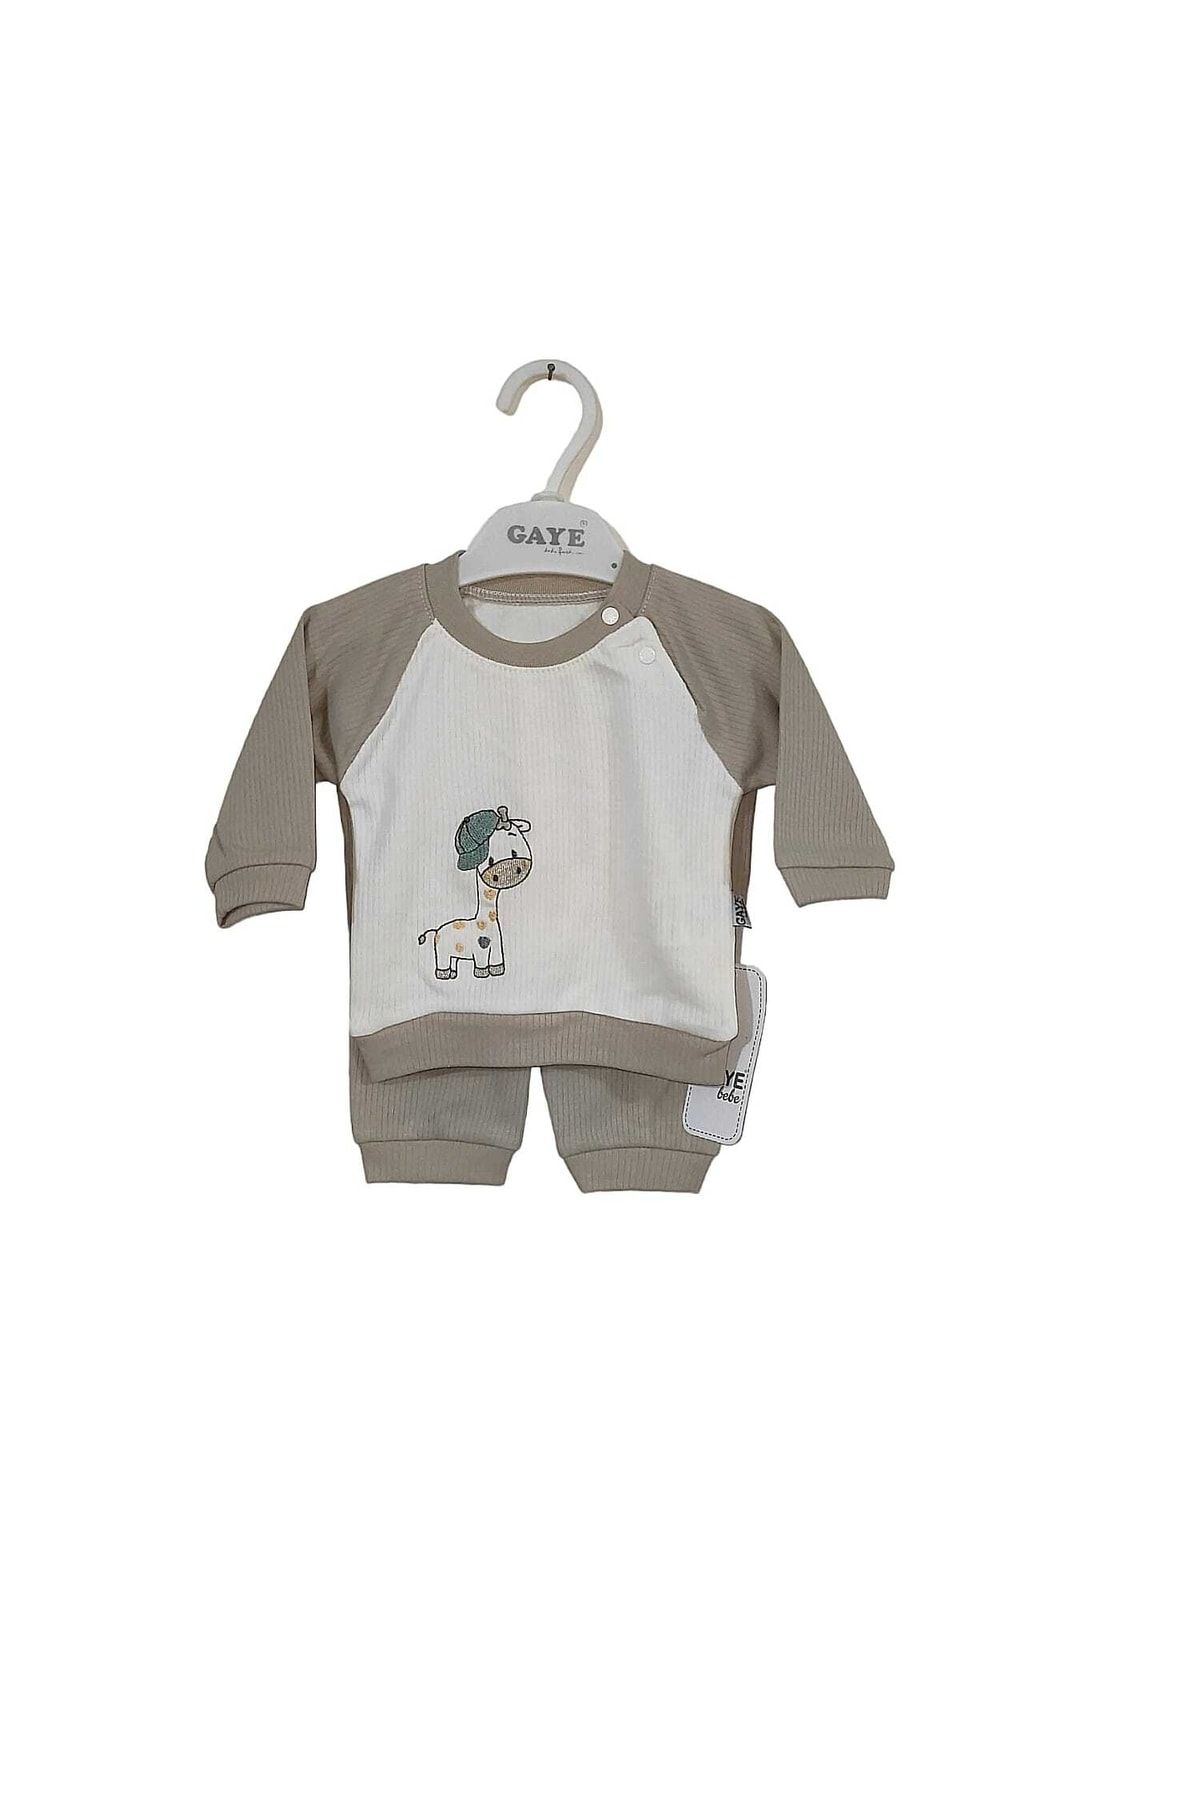 Gaye Baskılı Yumuşak Dokulu Çizgili Bebek Takım Bebek Kıyafeti Erkek & Kız %100 Pamuk